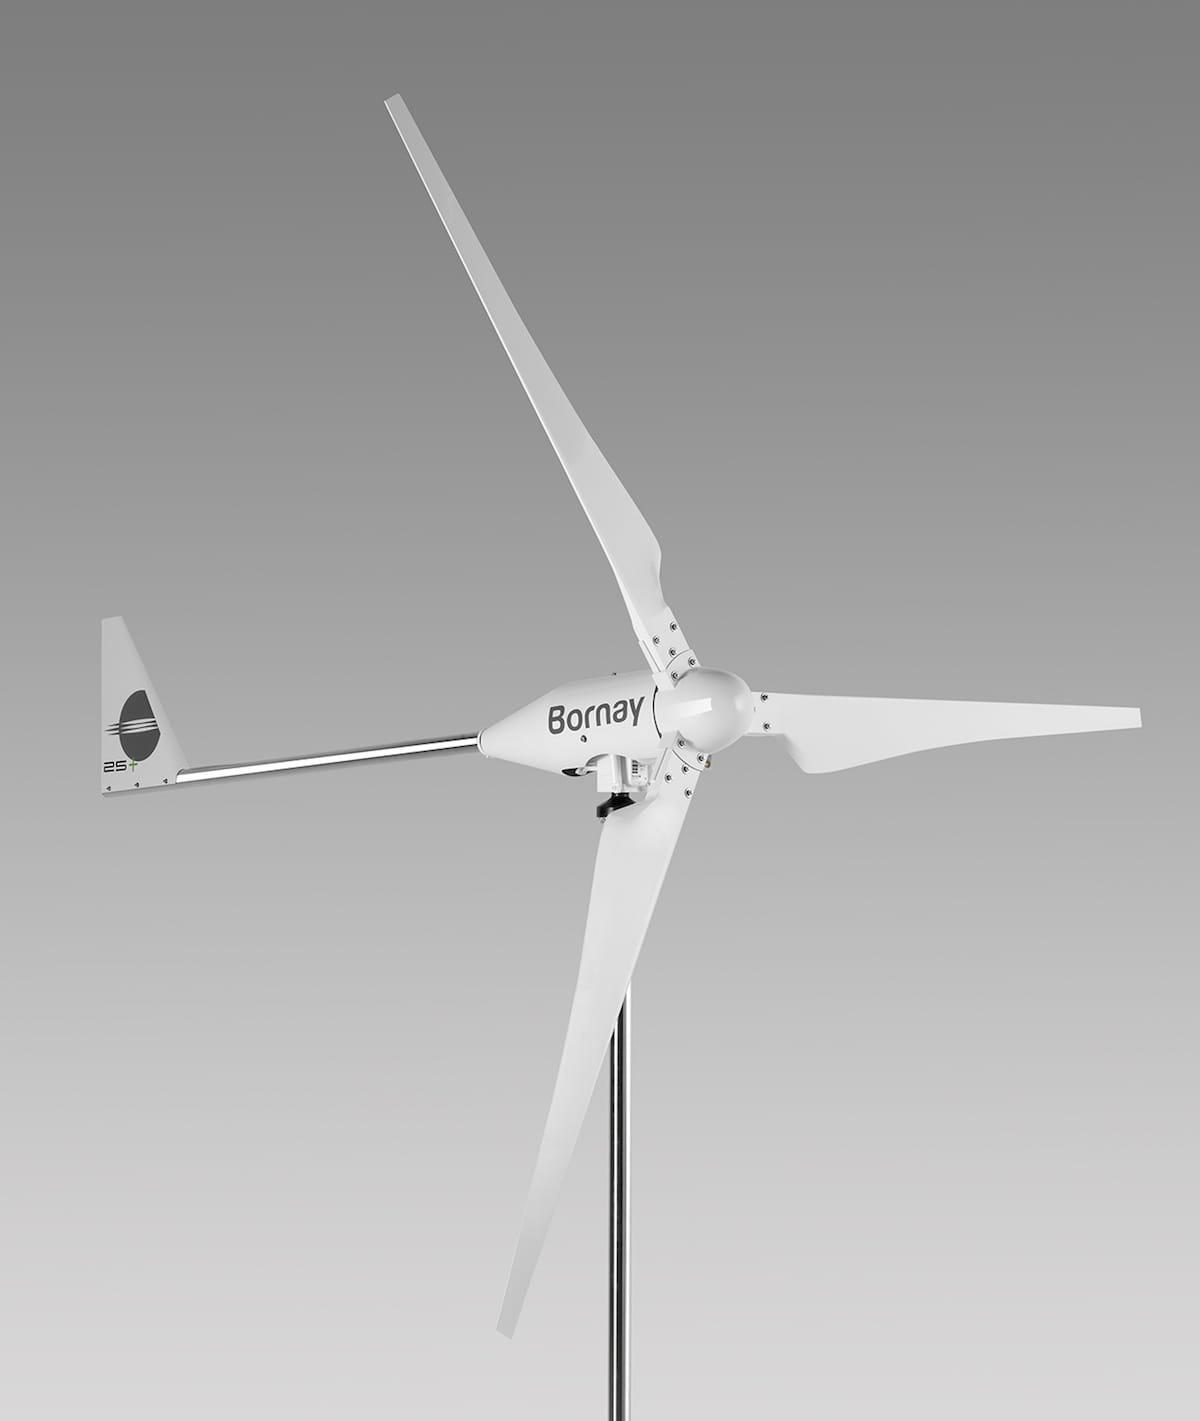 Aerogeneradores Bornay Wind +, los "Ferrari" de las miniturbinas eólicas para generación de energía doméstica